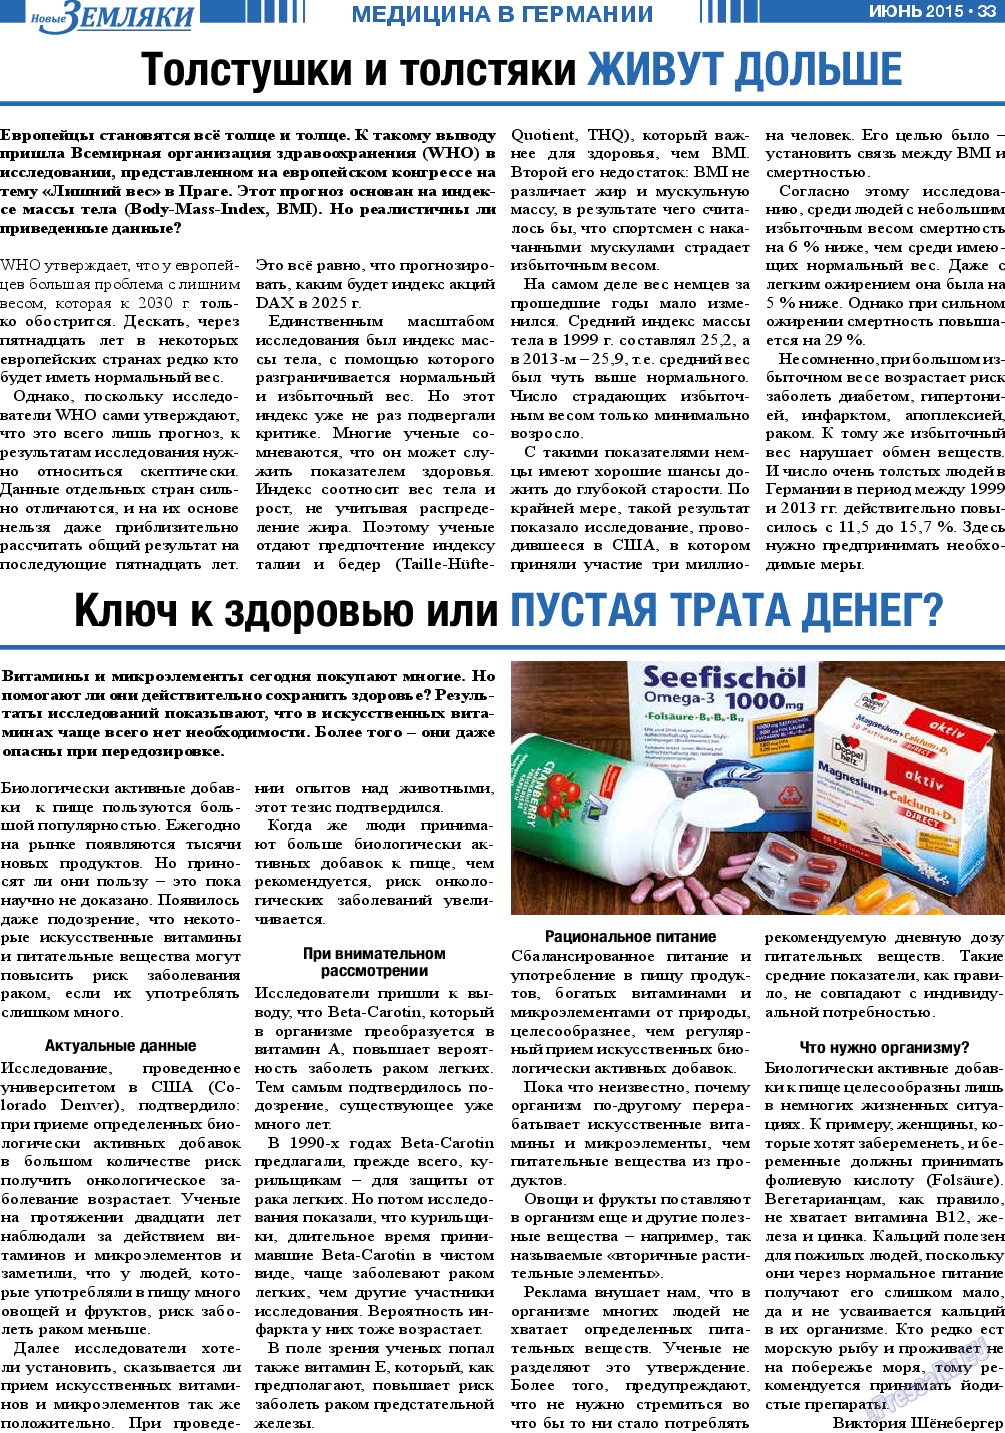 Новые Земляки, газета. 2015 №6 стр.33